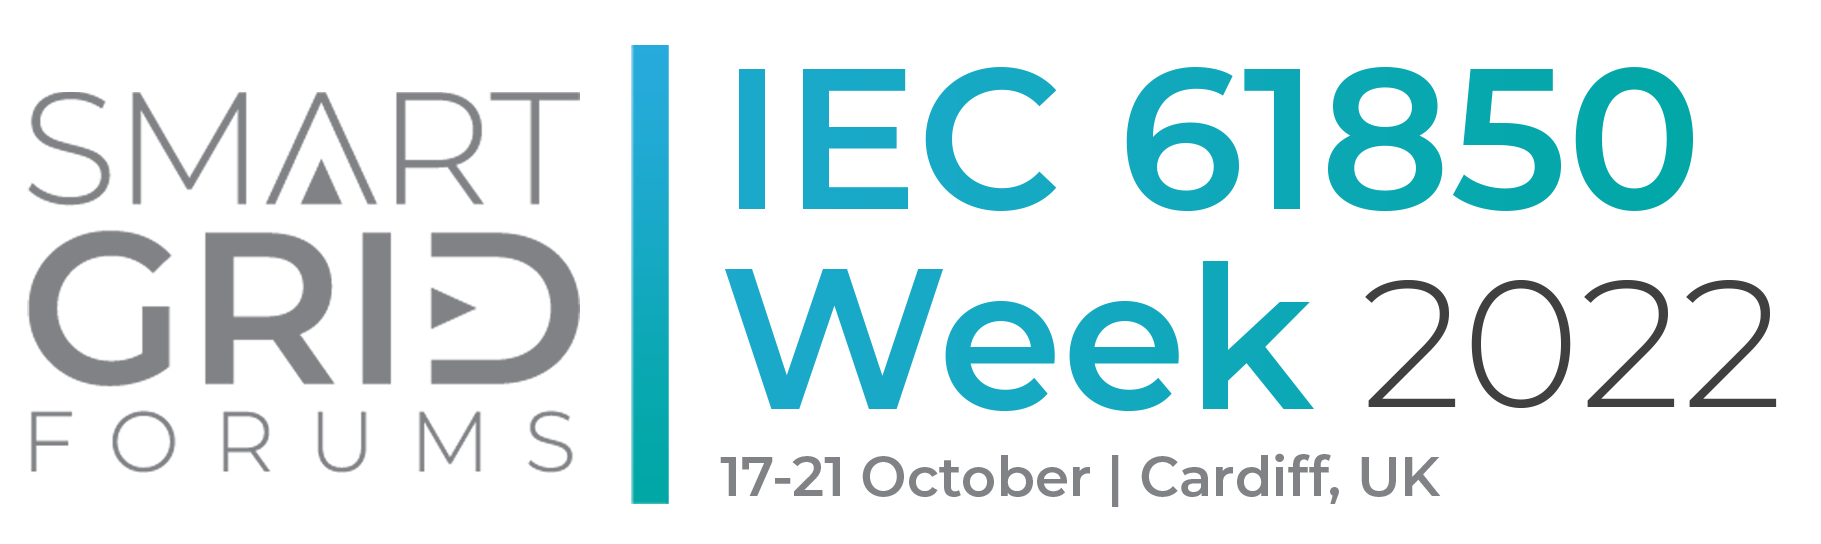 IEC 61850 Week 2022